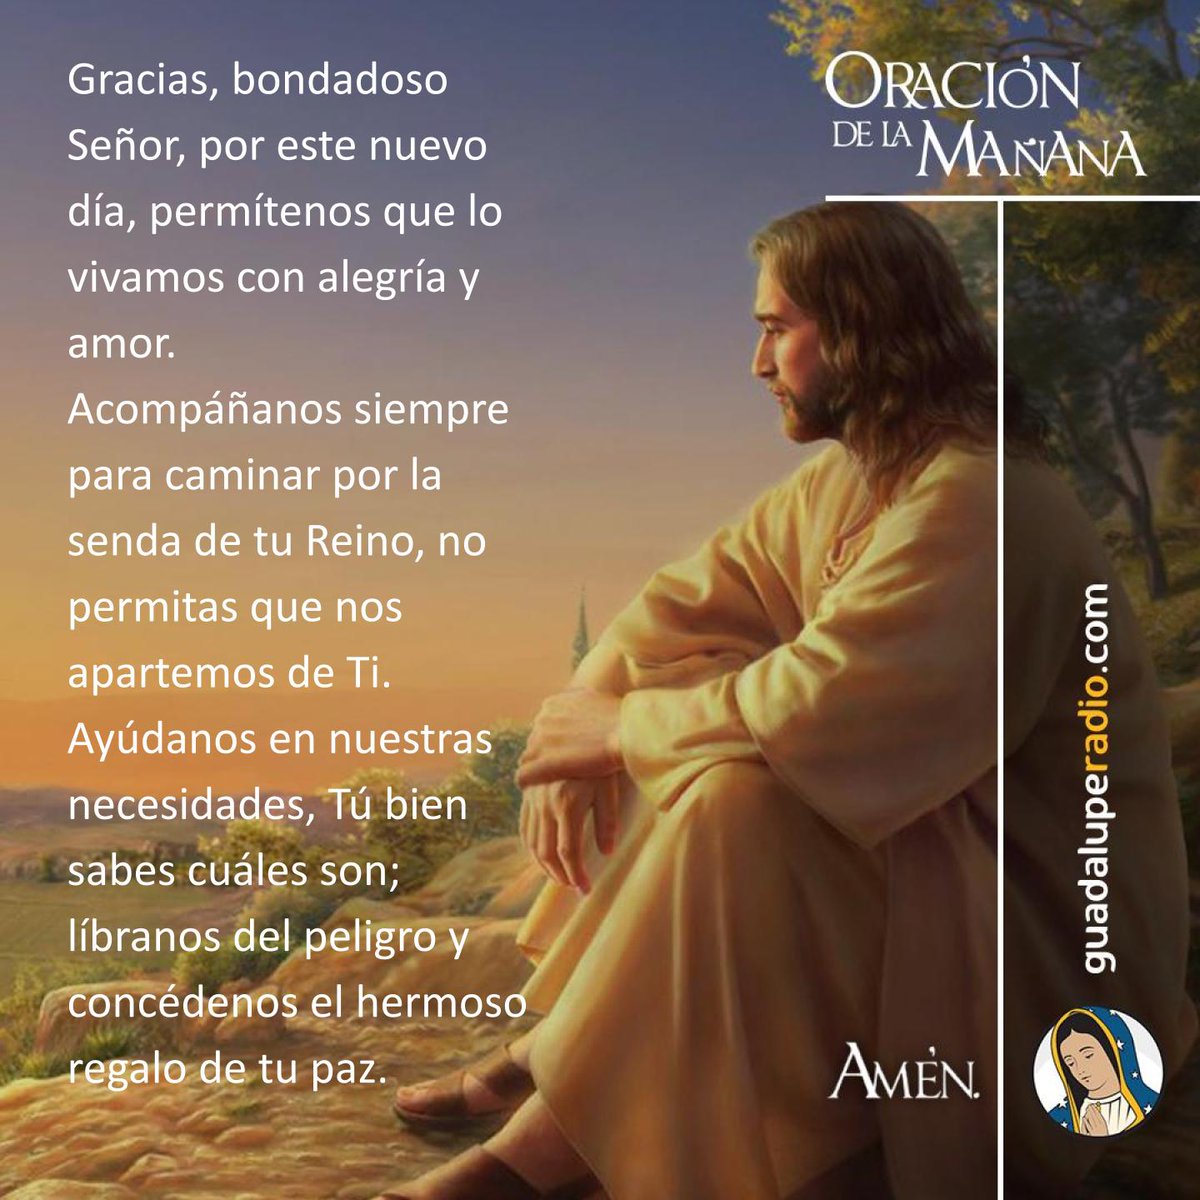 Gracias, bondadoso Señor, por este nuevo día.
#OracionMañana
#GuadalupeRadio